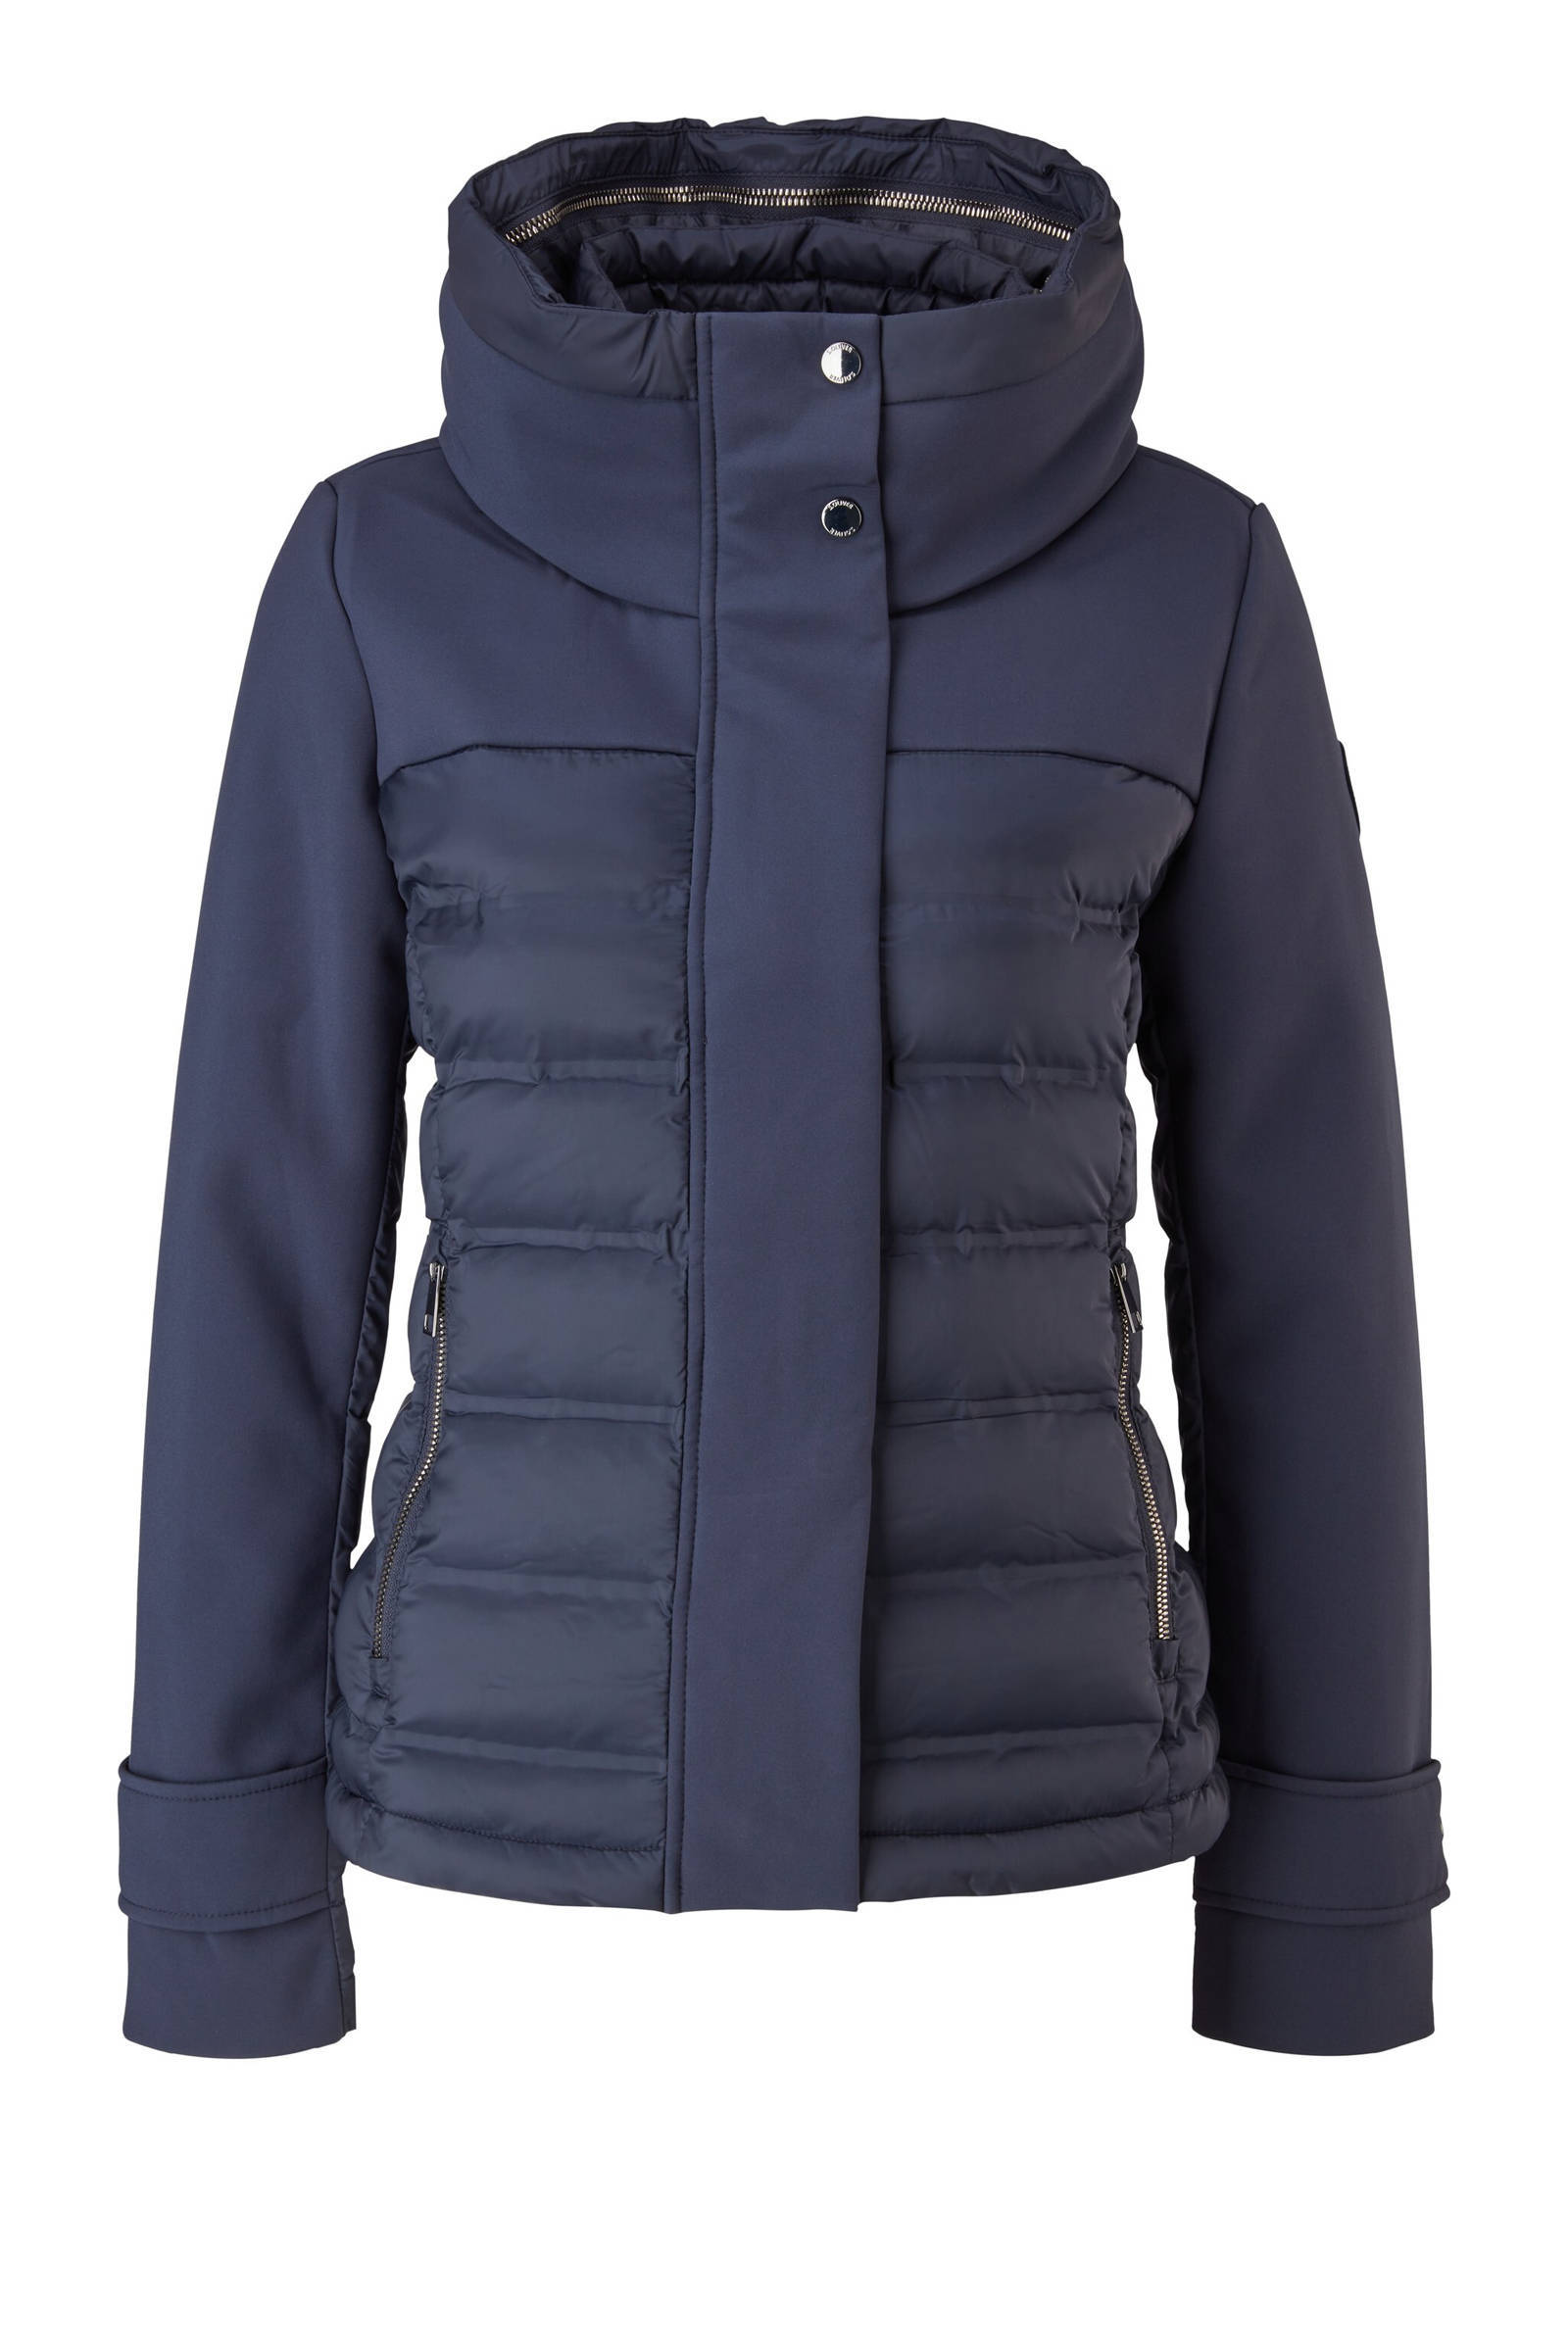 S.Oliver gewatteerde korte jas donkerblauw online kopen